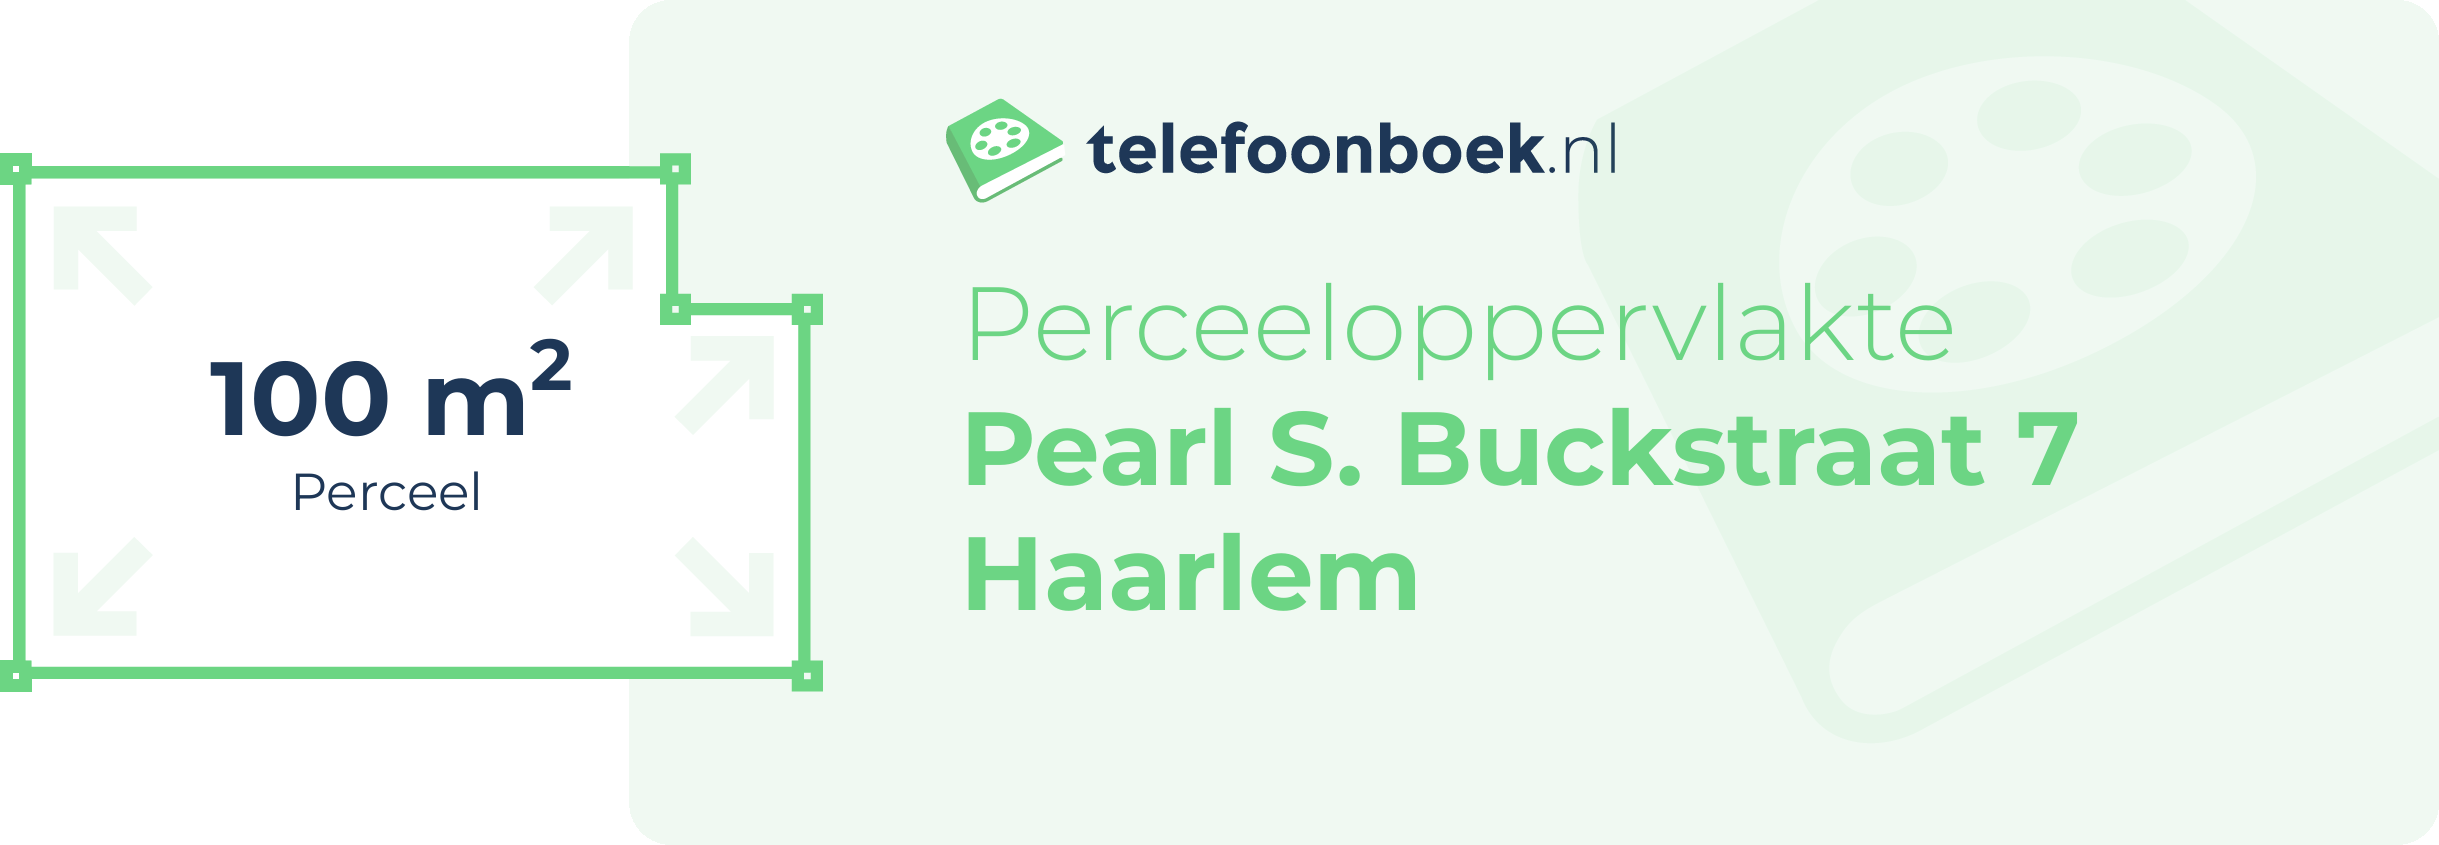 Perceeloppervlakte Pearl S. Buckstraat 7 Haarlem